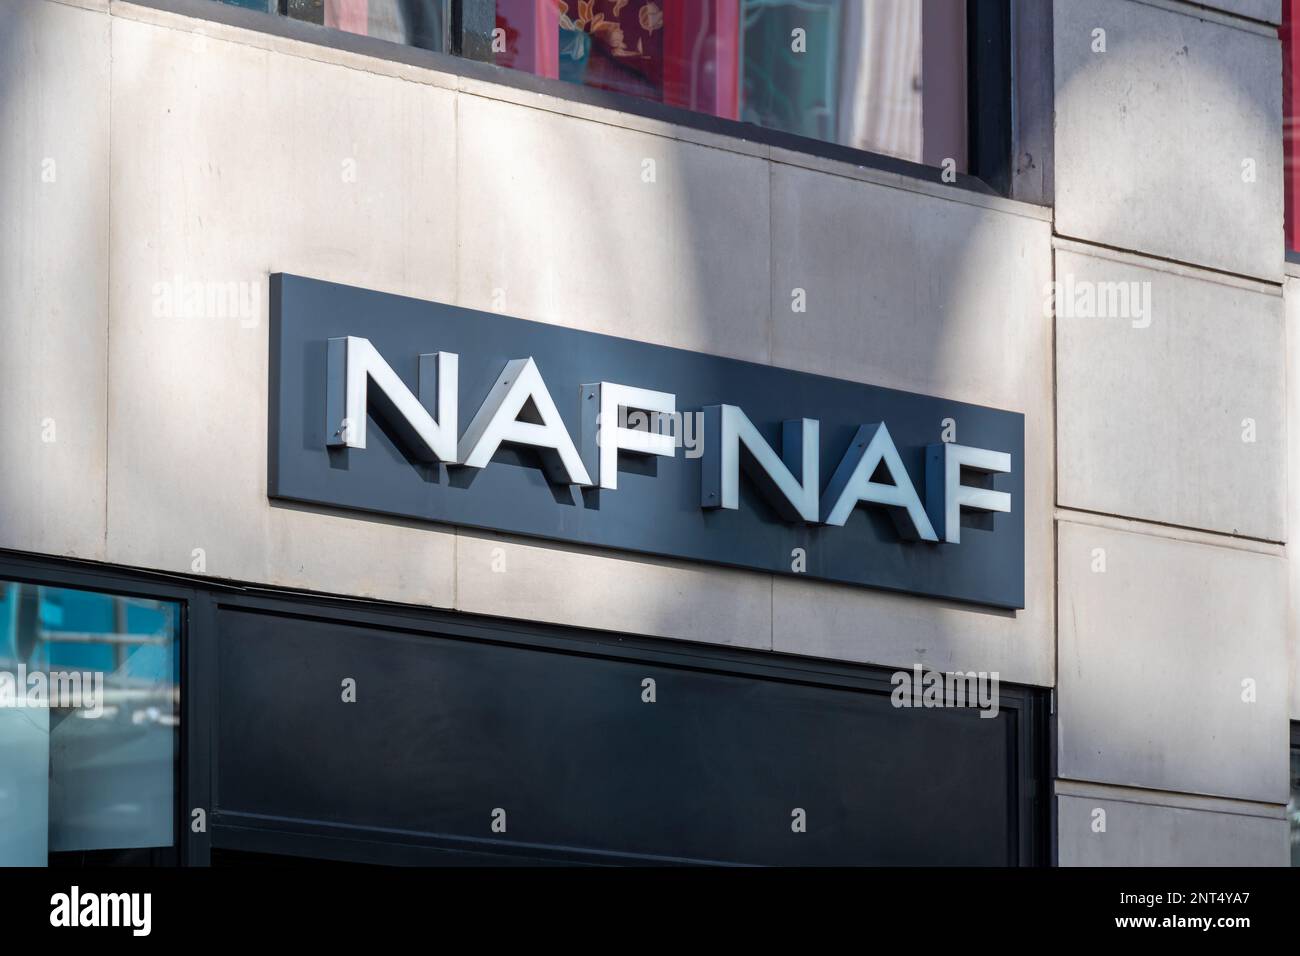 Naf naf hi-res stock photography and images - Alamy